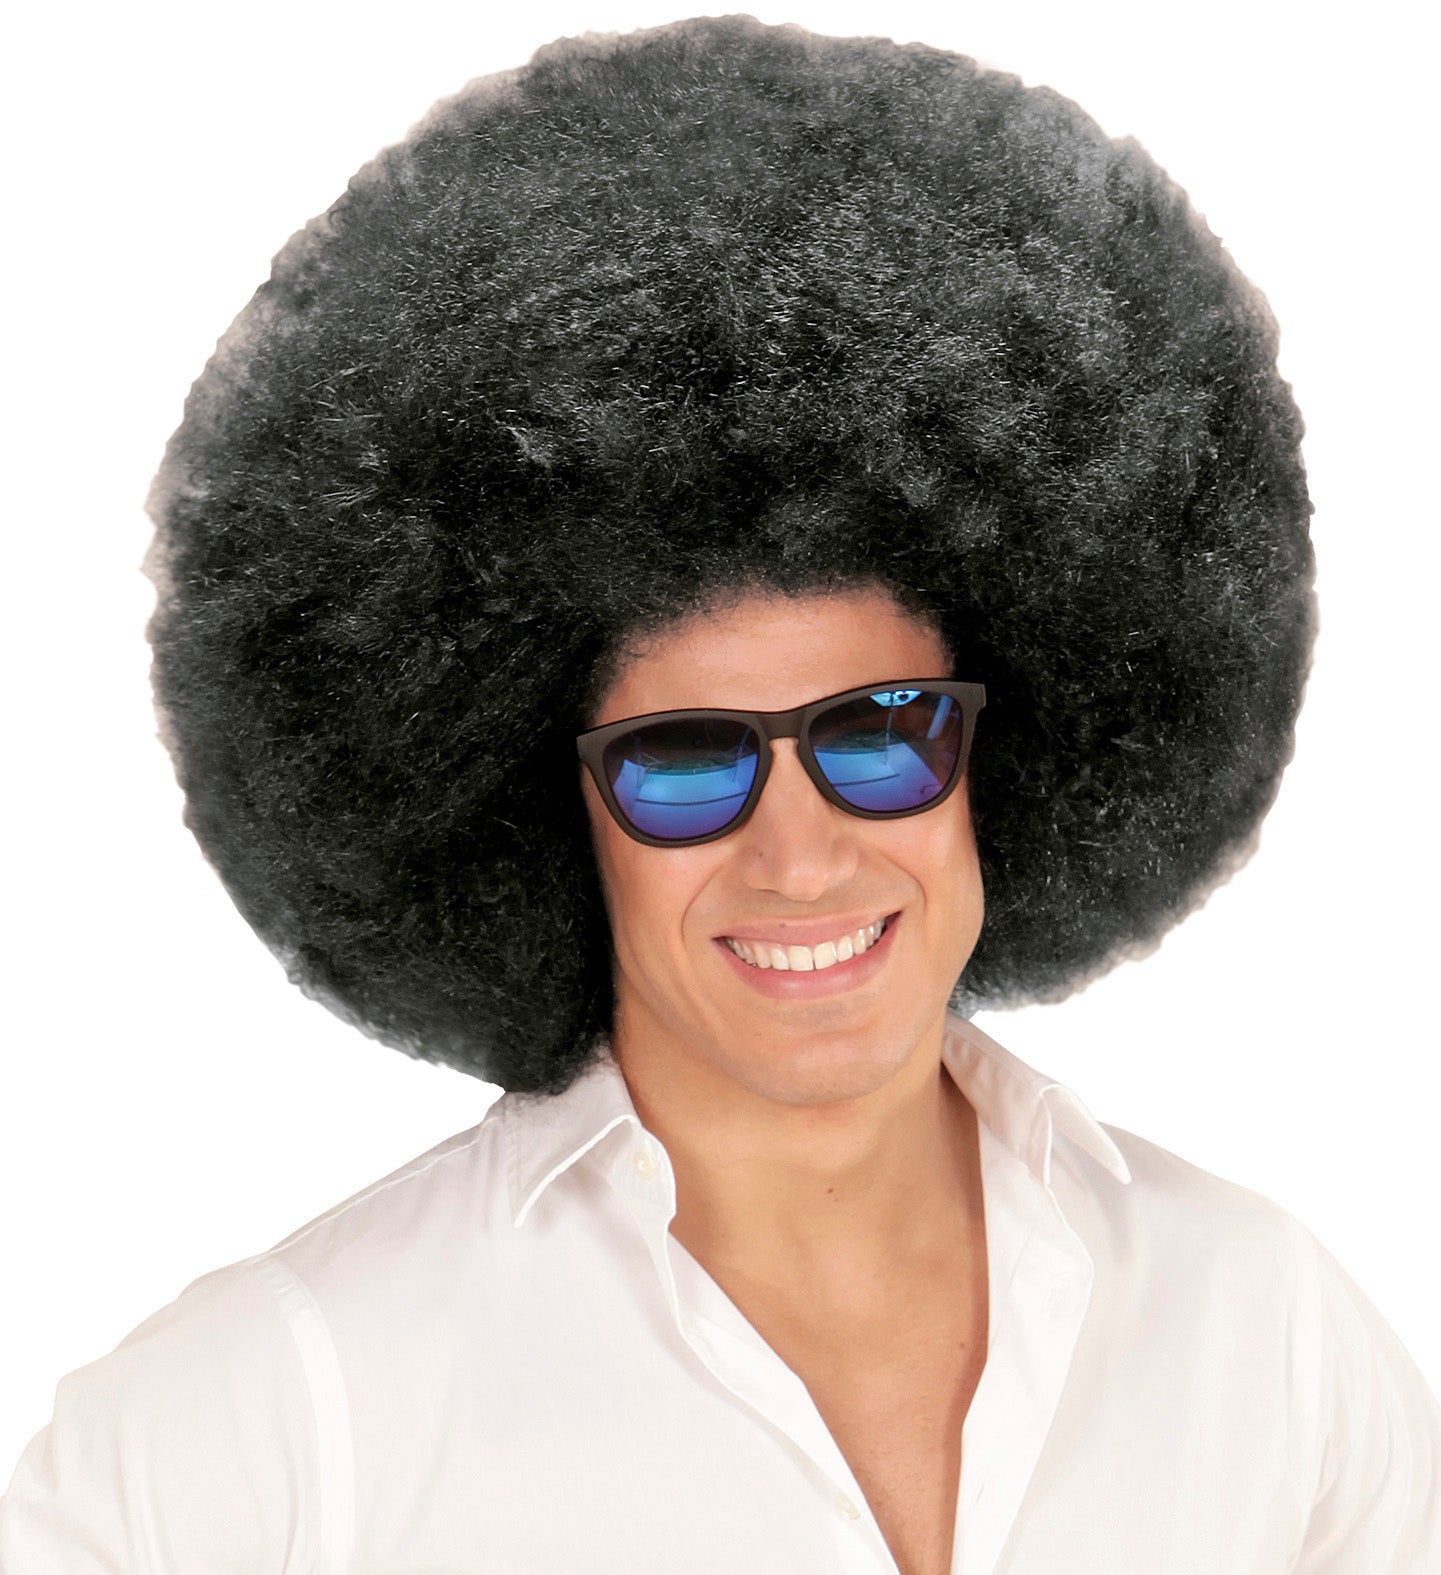 Men's Oversized Black Afro Wig